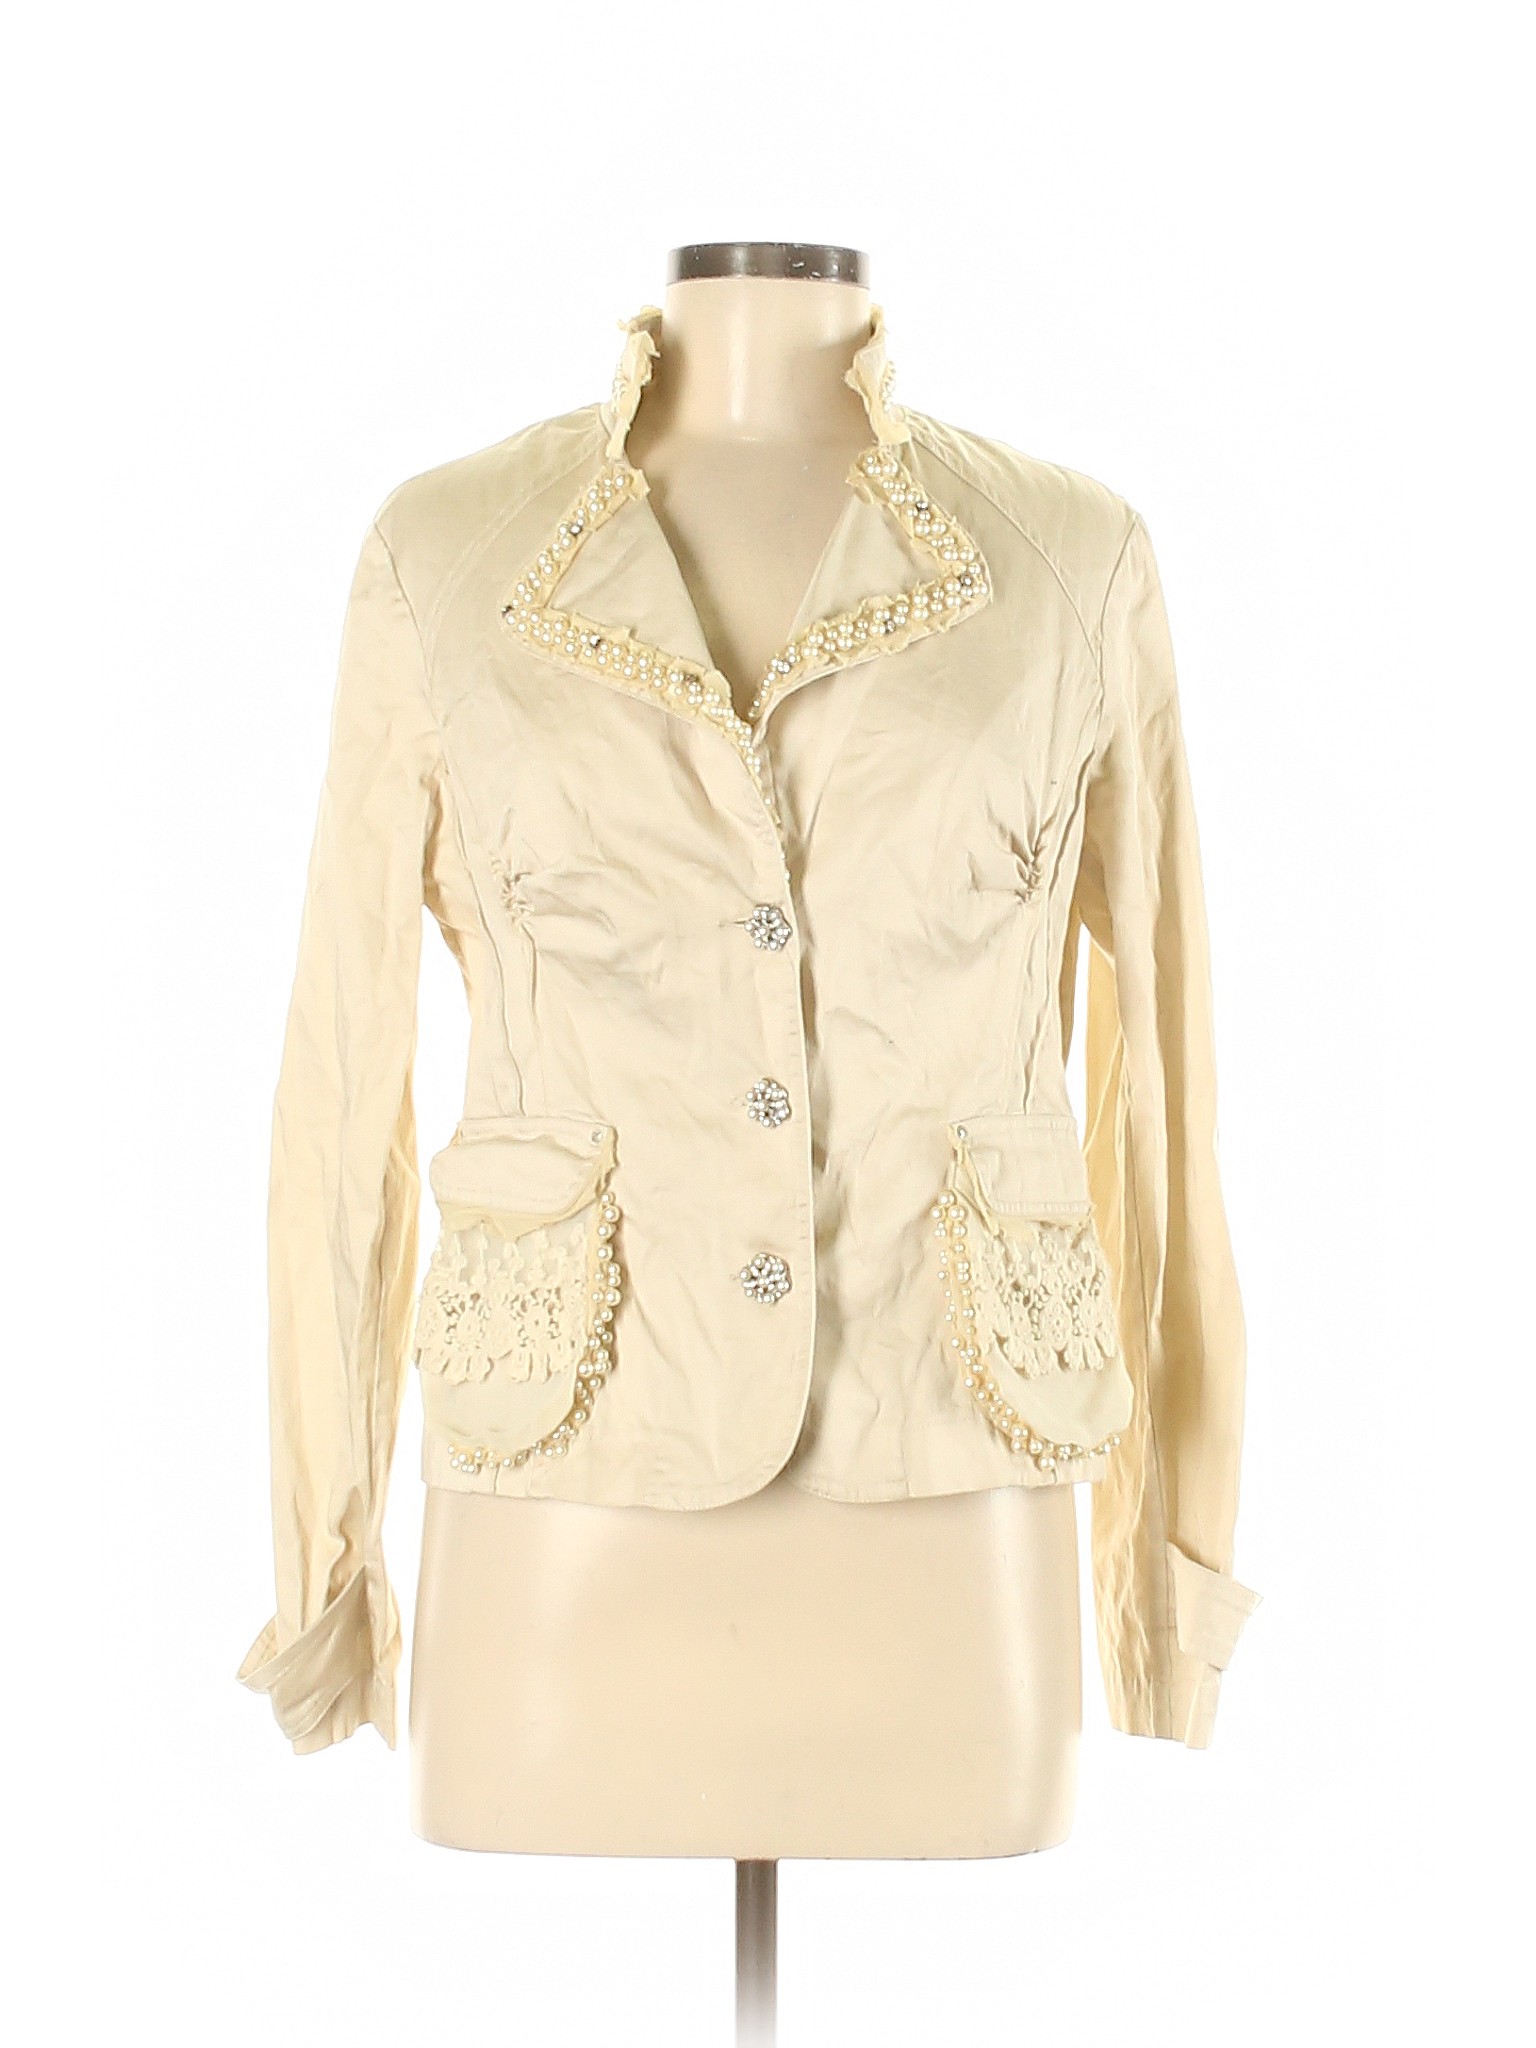 Style Women Ivory Jacket M | eBay